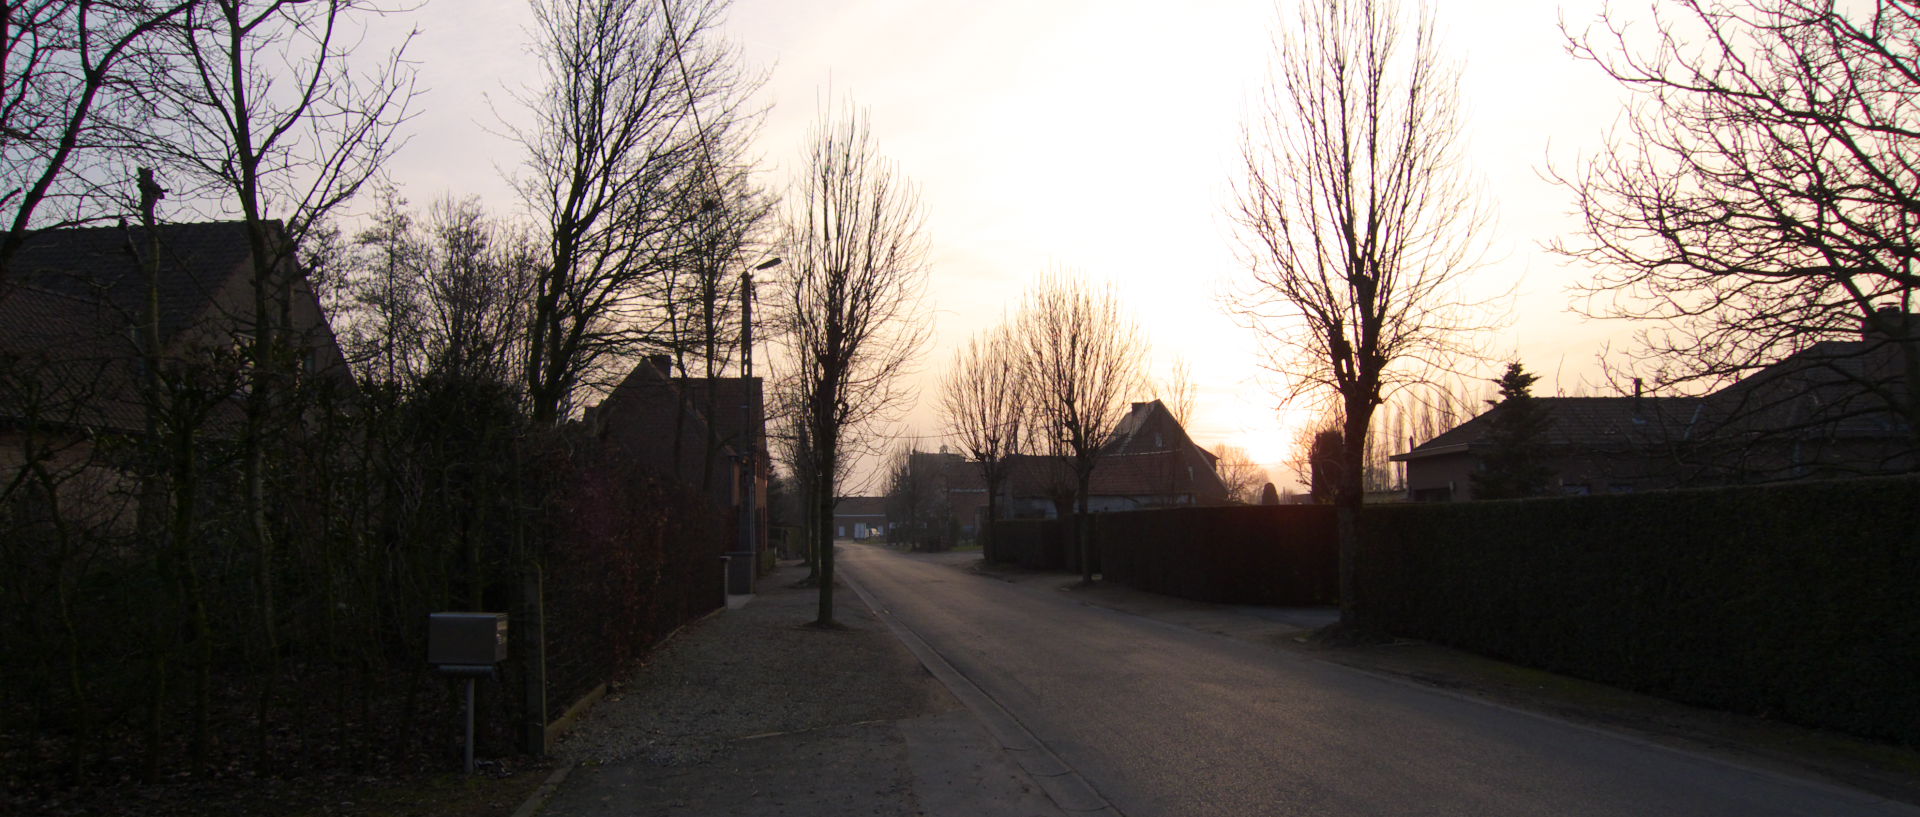 Samedi 21 février 2009, 17:45, Tapuitstraat, à Deerlijk, en Belgique.